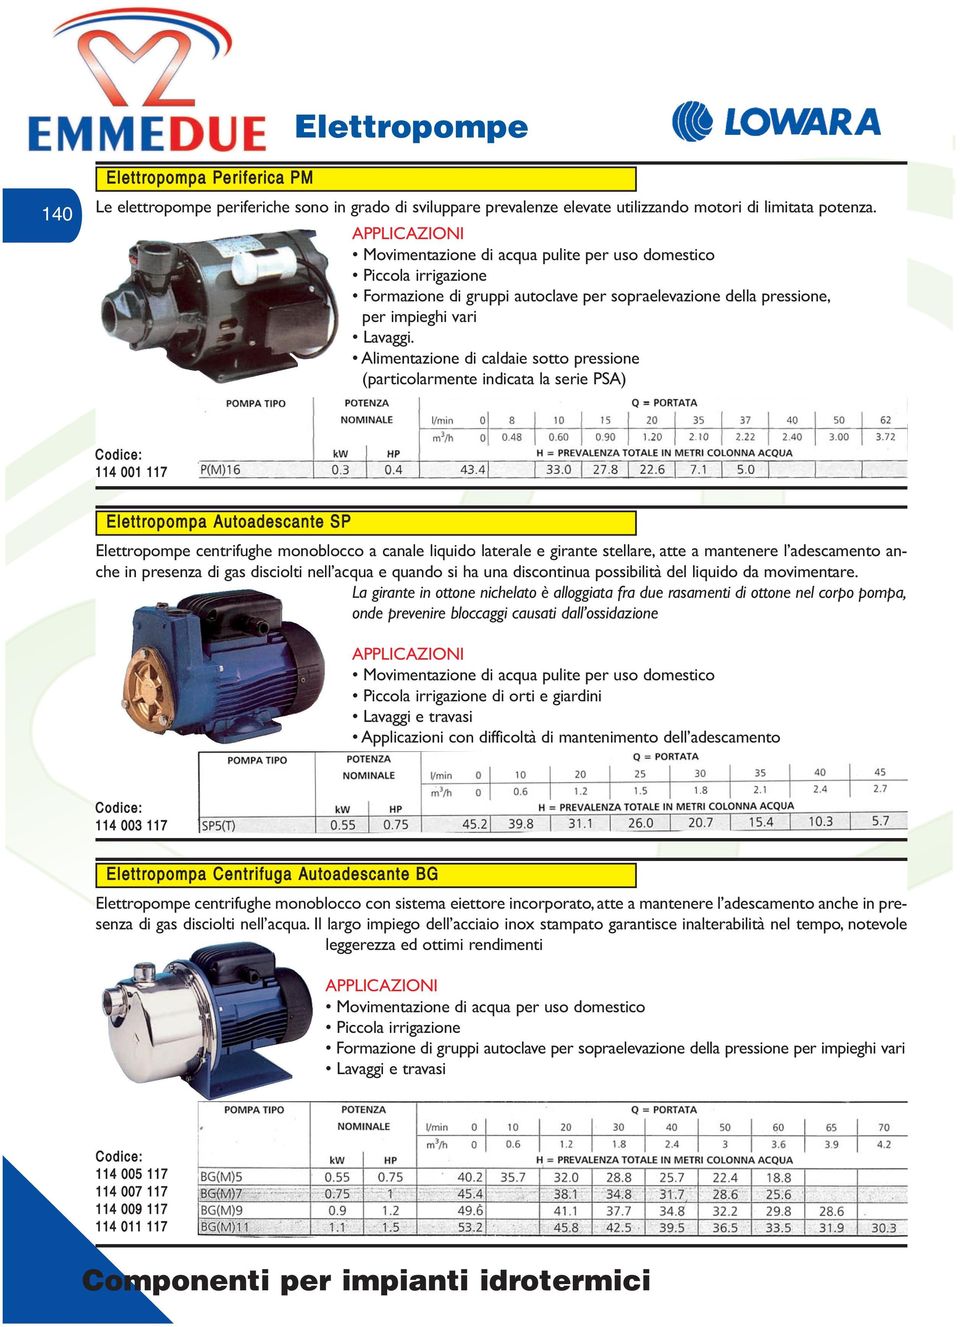 Alimentazione di caldaie sotto pressione (particolarmente indicata la serie PSA) 001 117 Elettropompa Autoadescante SP Elettropompe centrifughe monoblocco a canale liquido laterale e girante